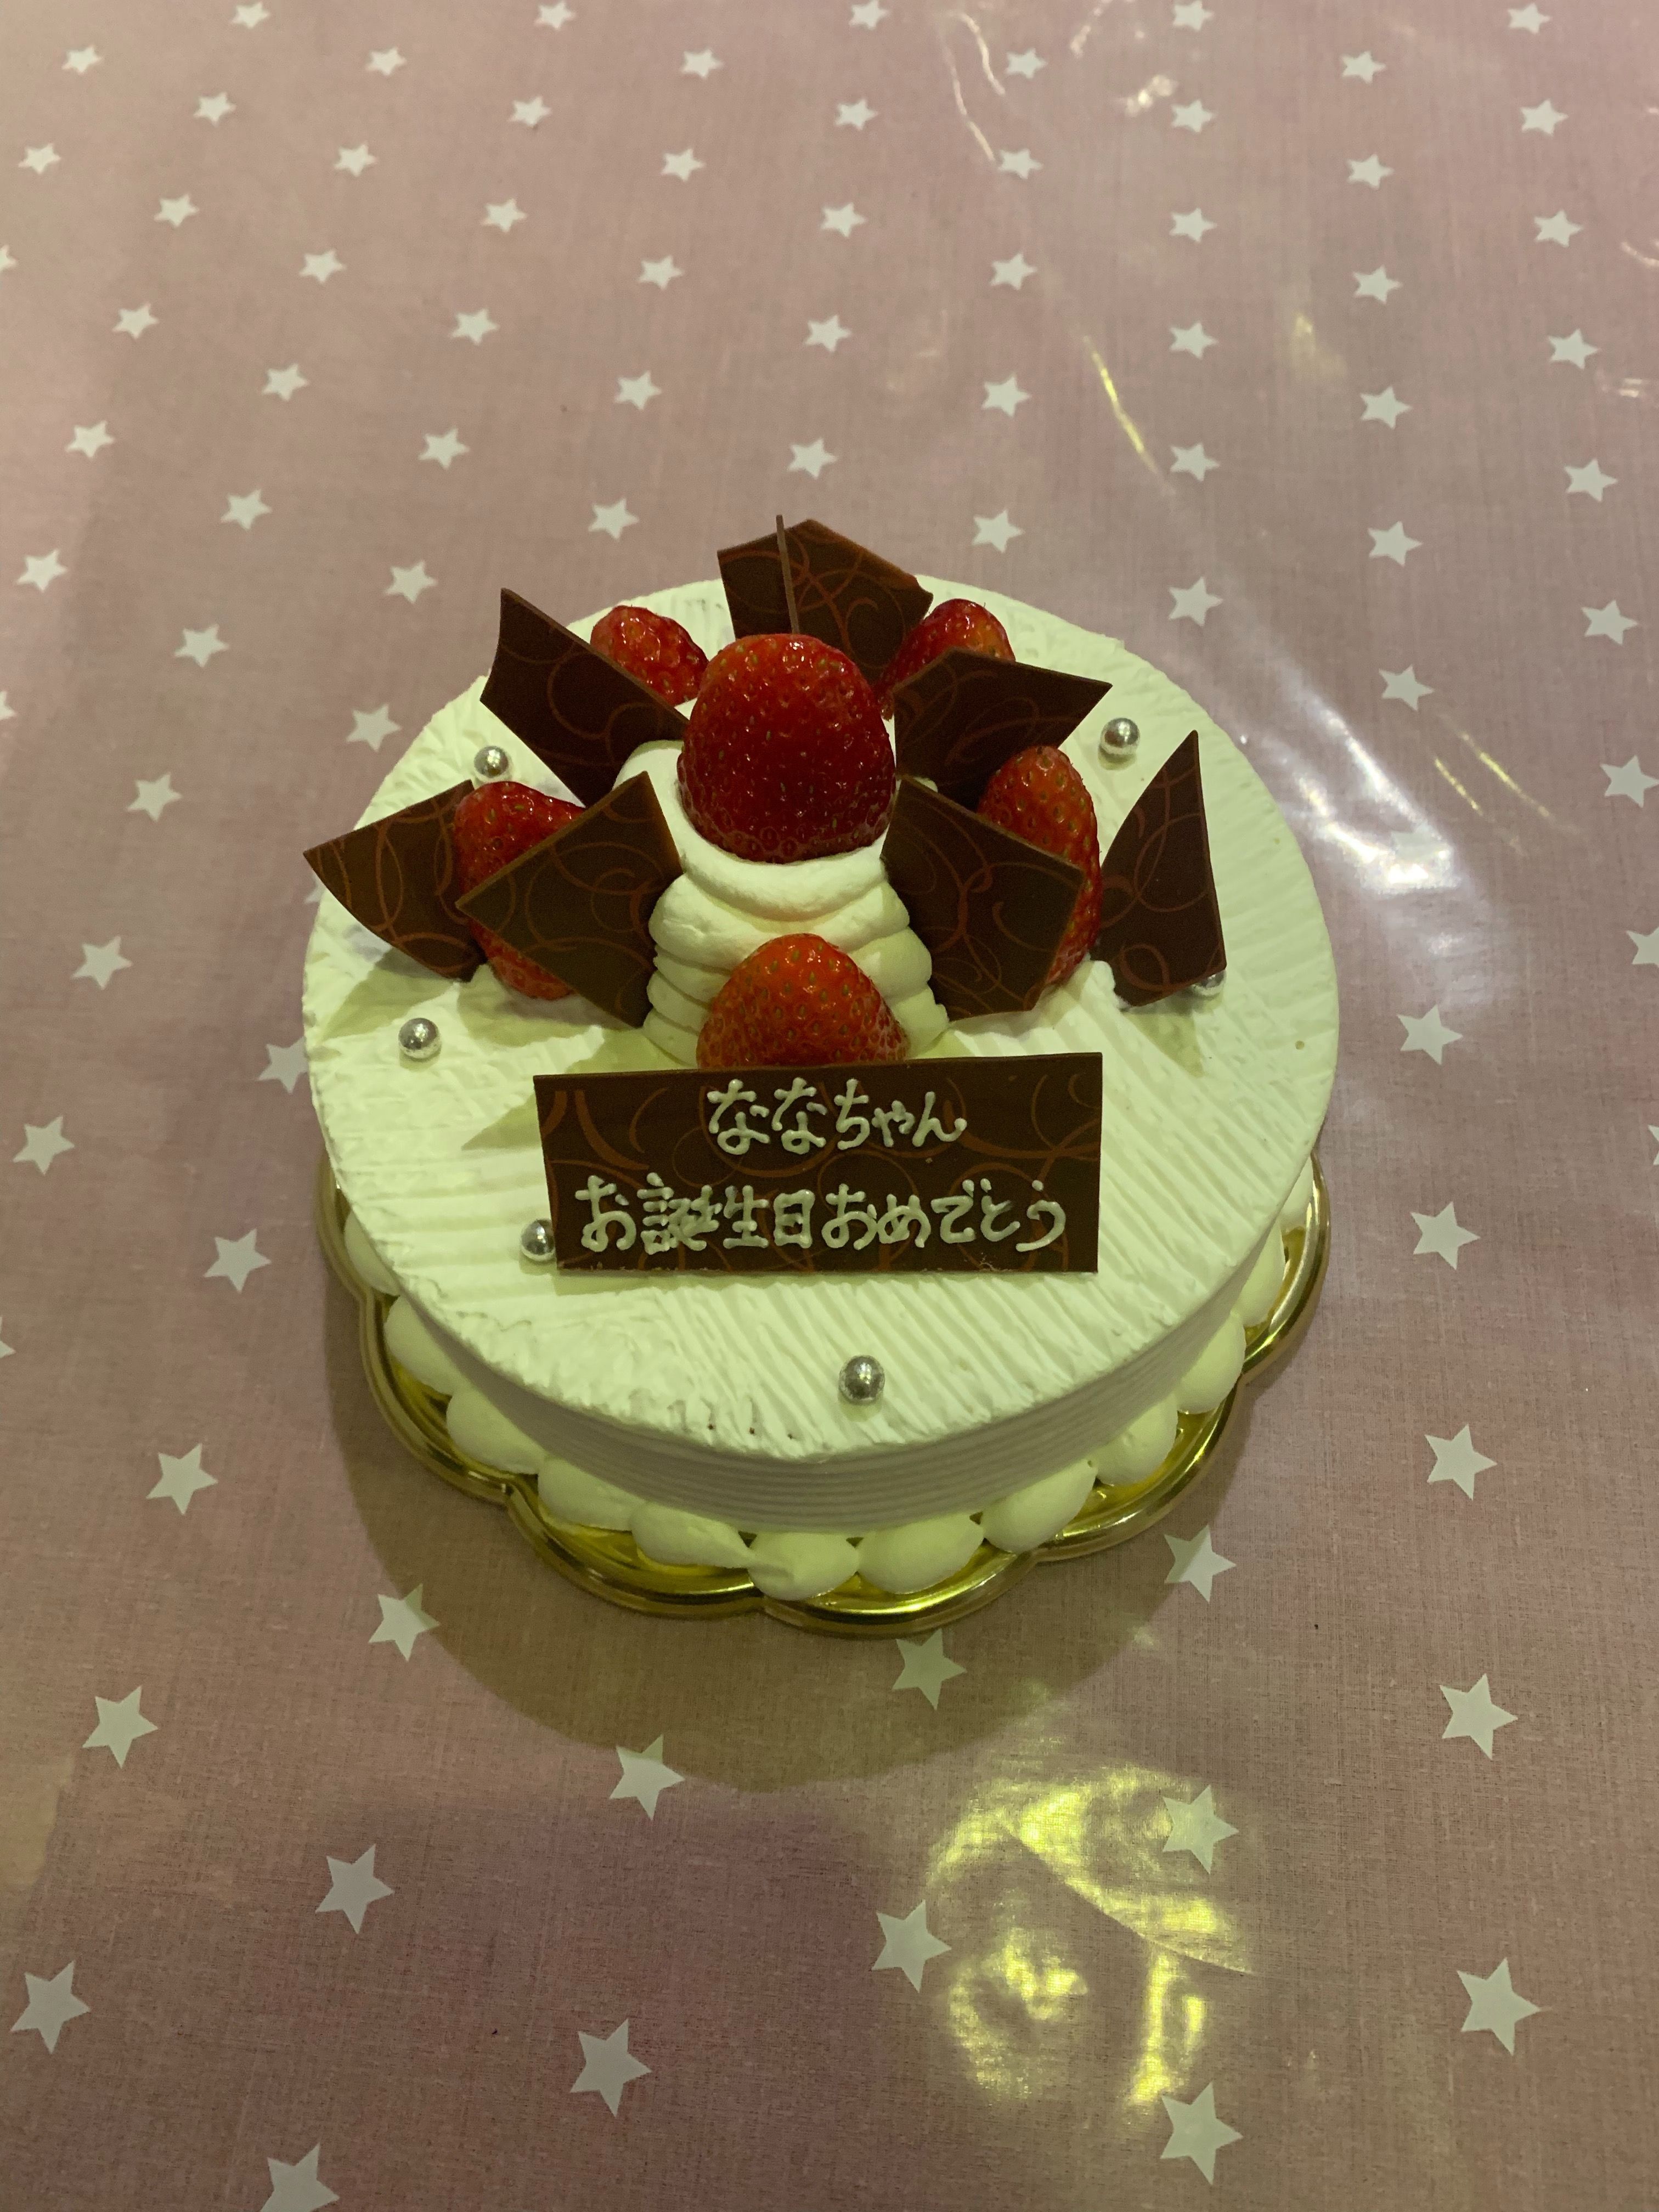 お誕生日ケーキ宅配 東京 横浜 川崎 デコレーションケーキのデリバリーショップ 楽天ブログ